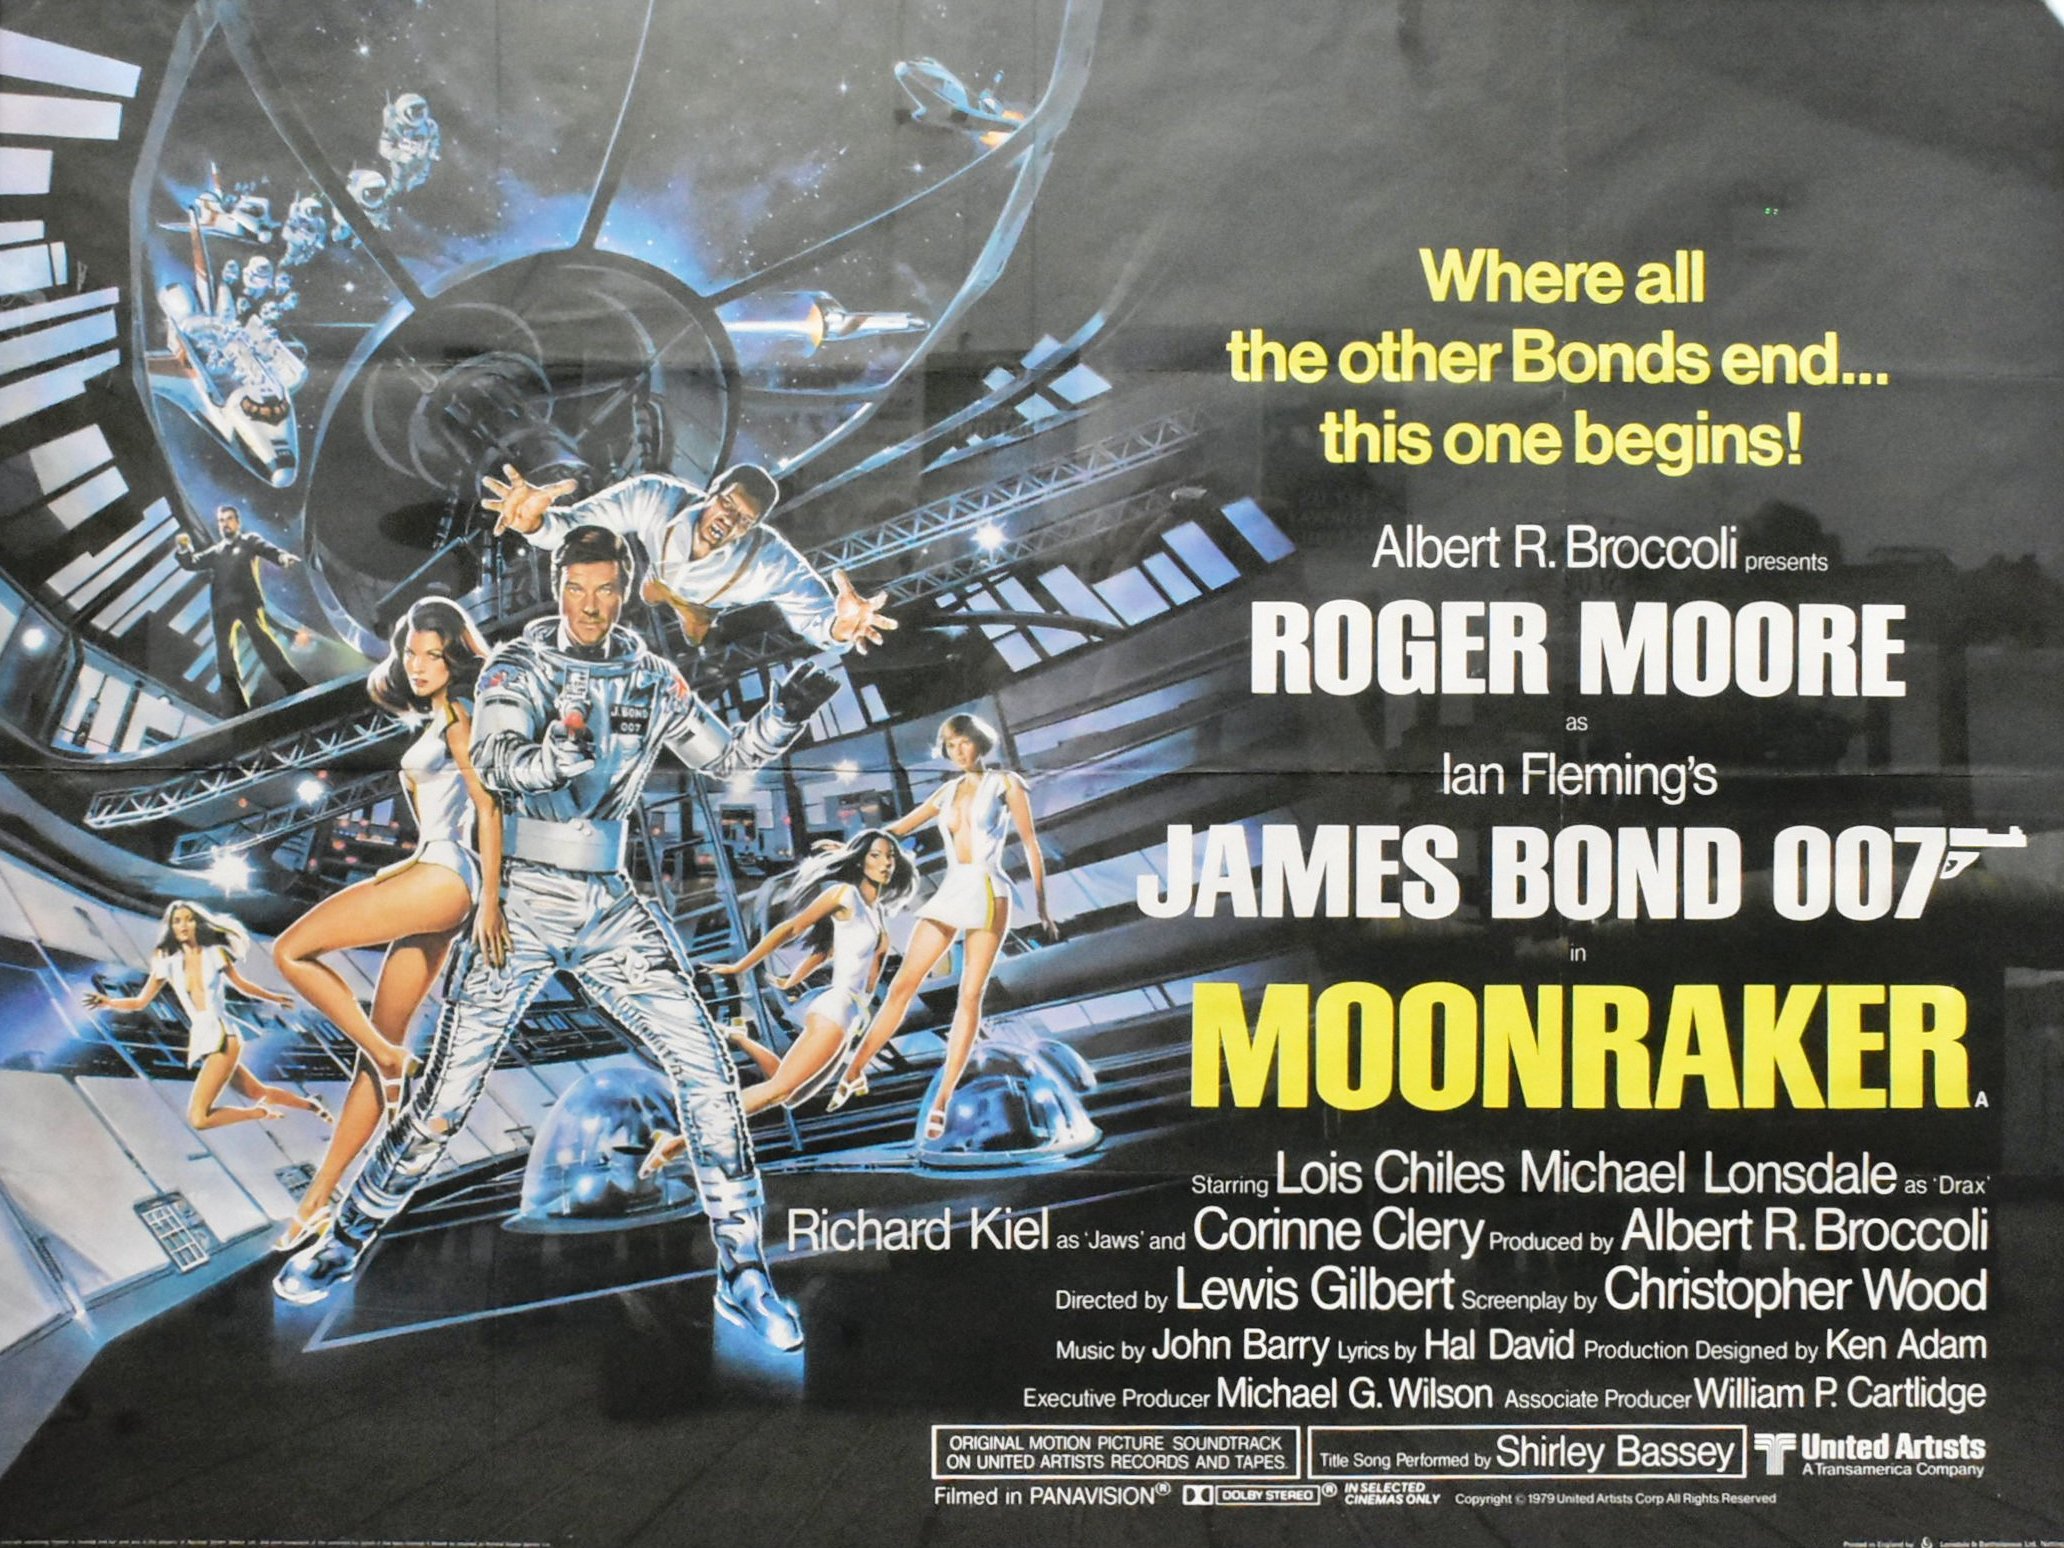 MOONRAKER (1979) - JAMES BOND - ORIGINAL QUAD POSTER - Image 2 of 4